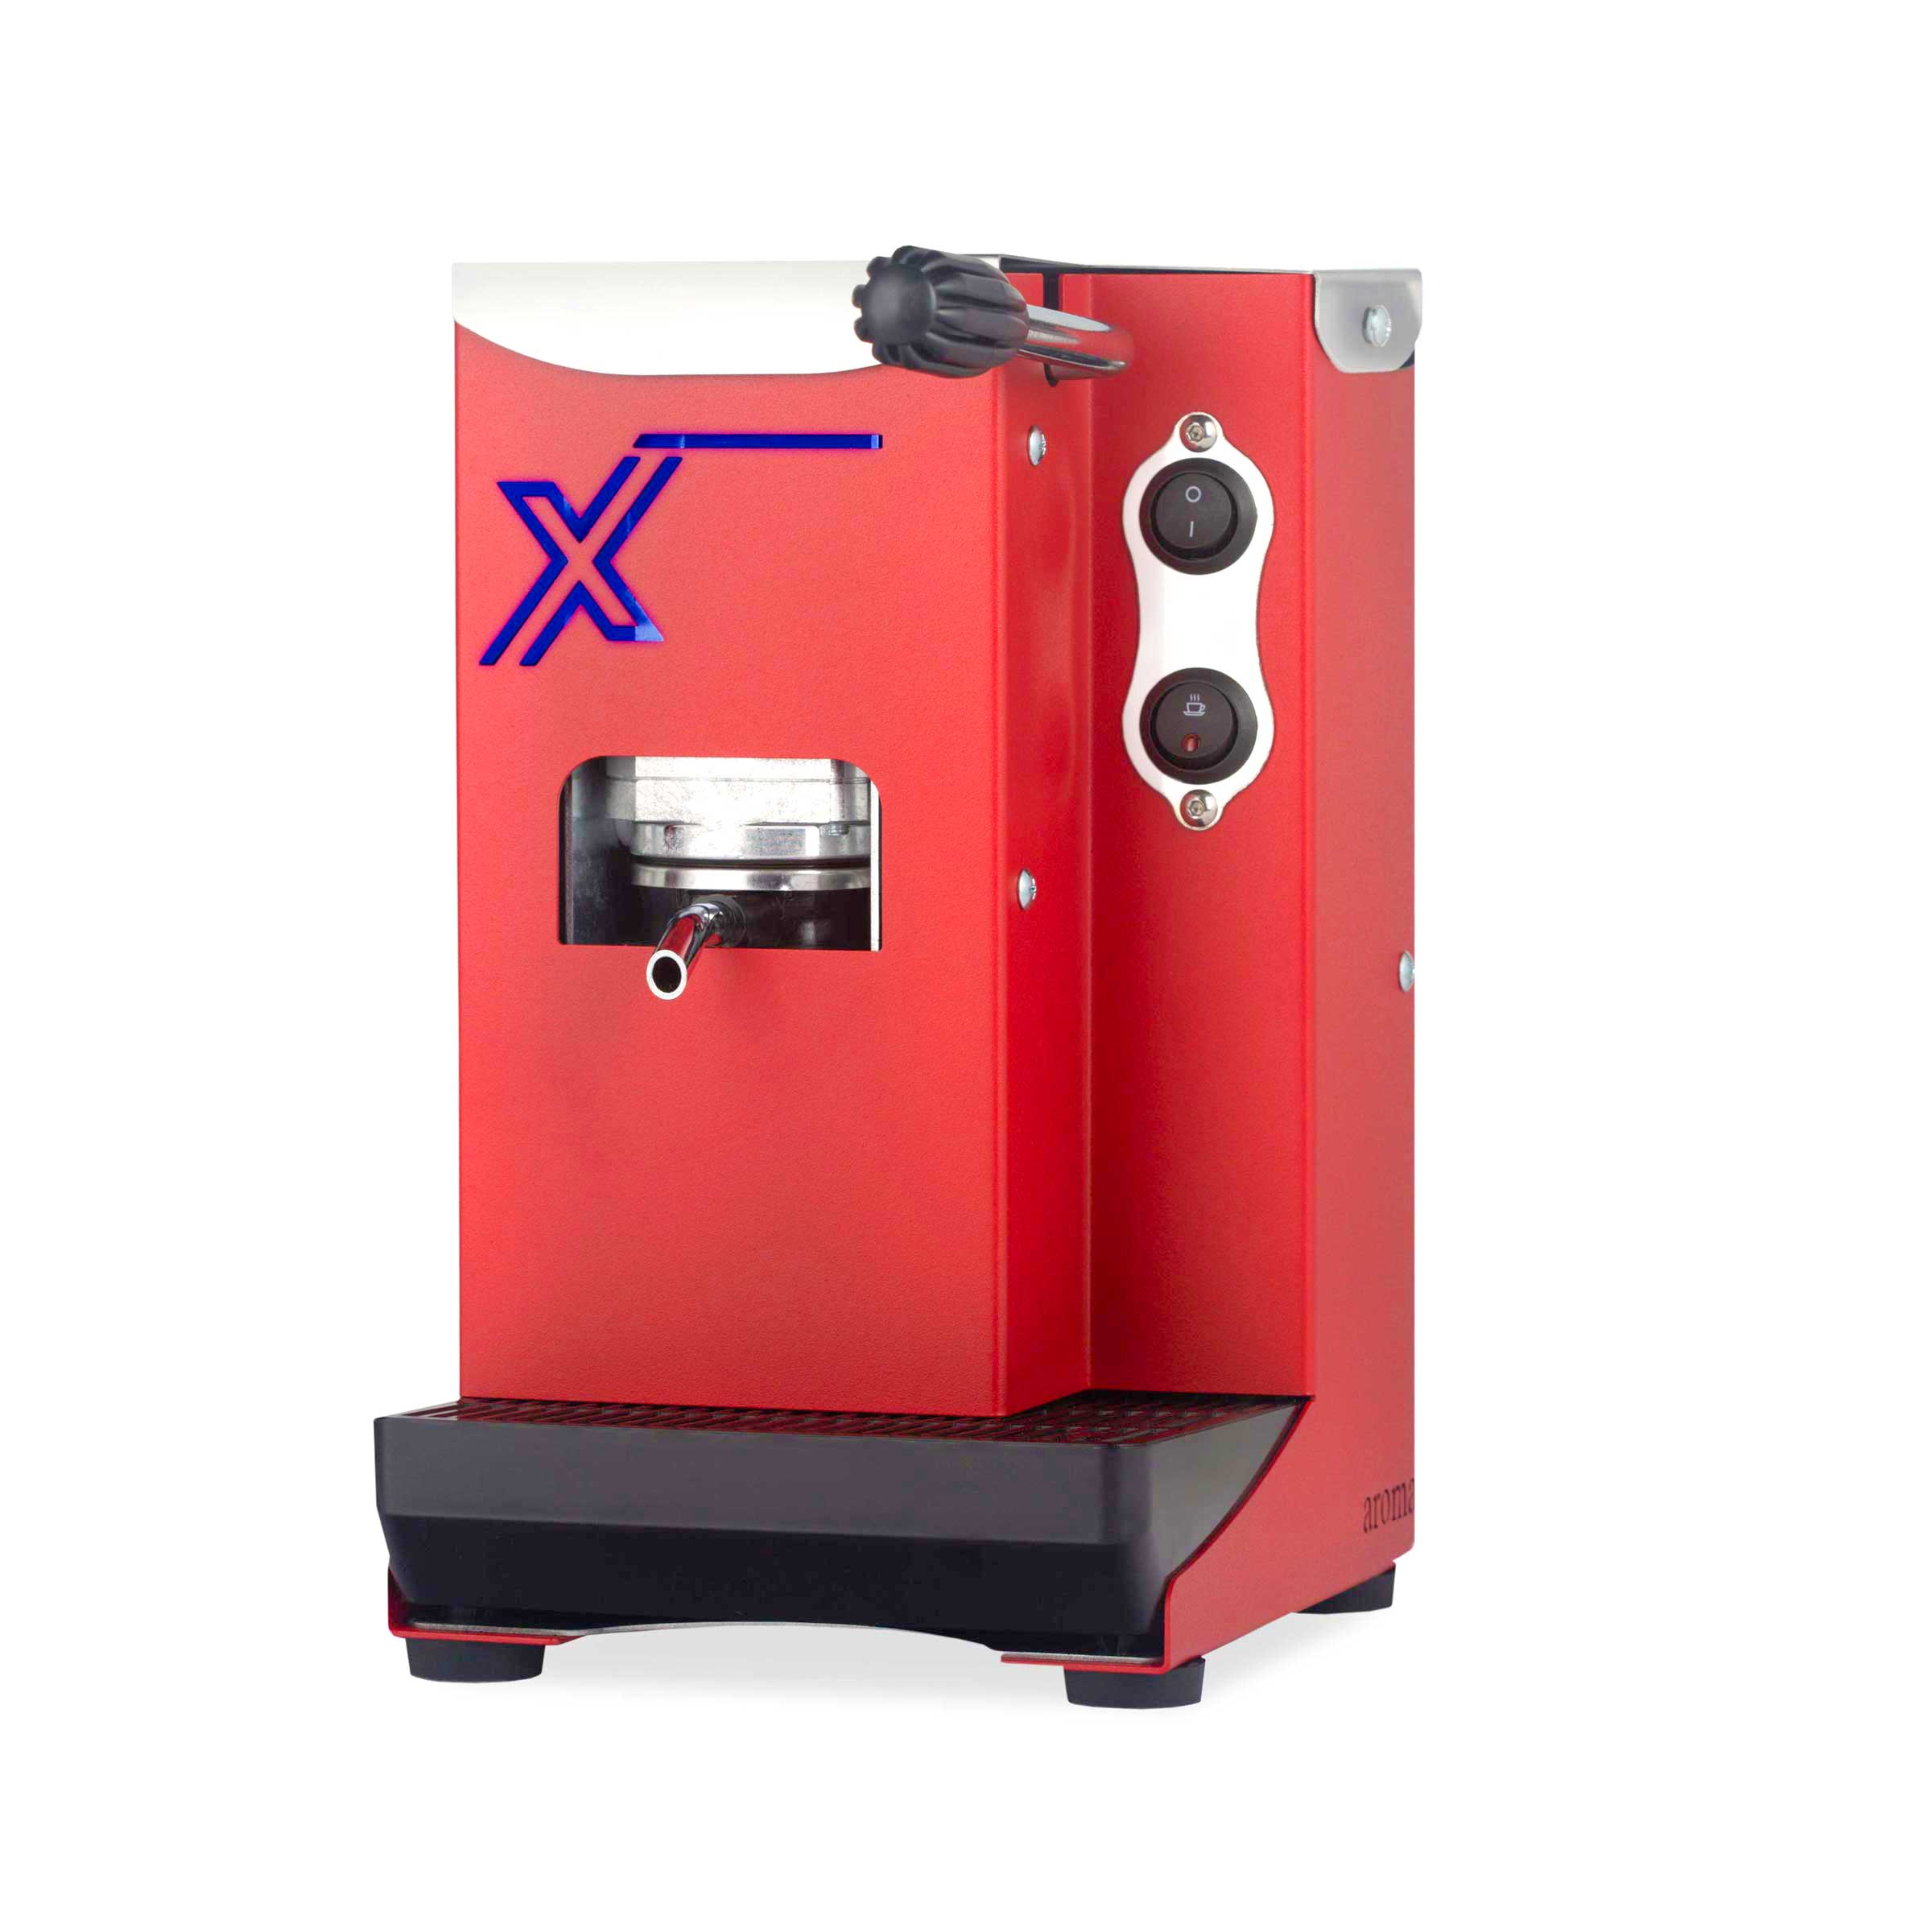 Aroma-Macchine-X-red